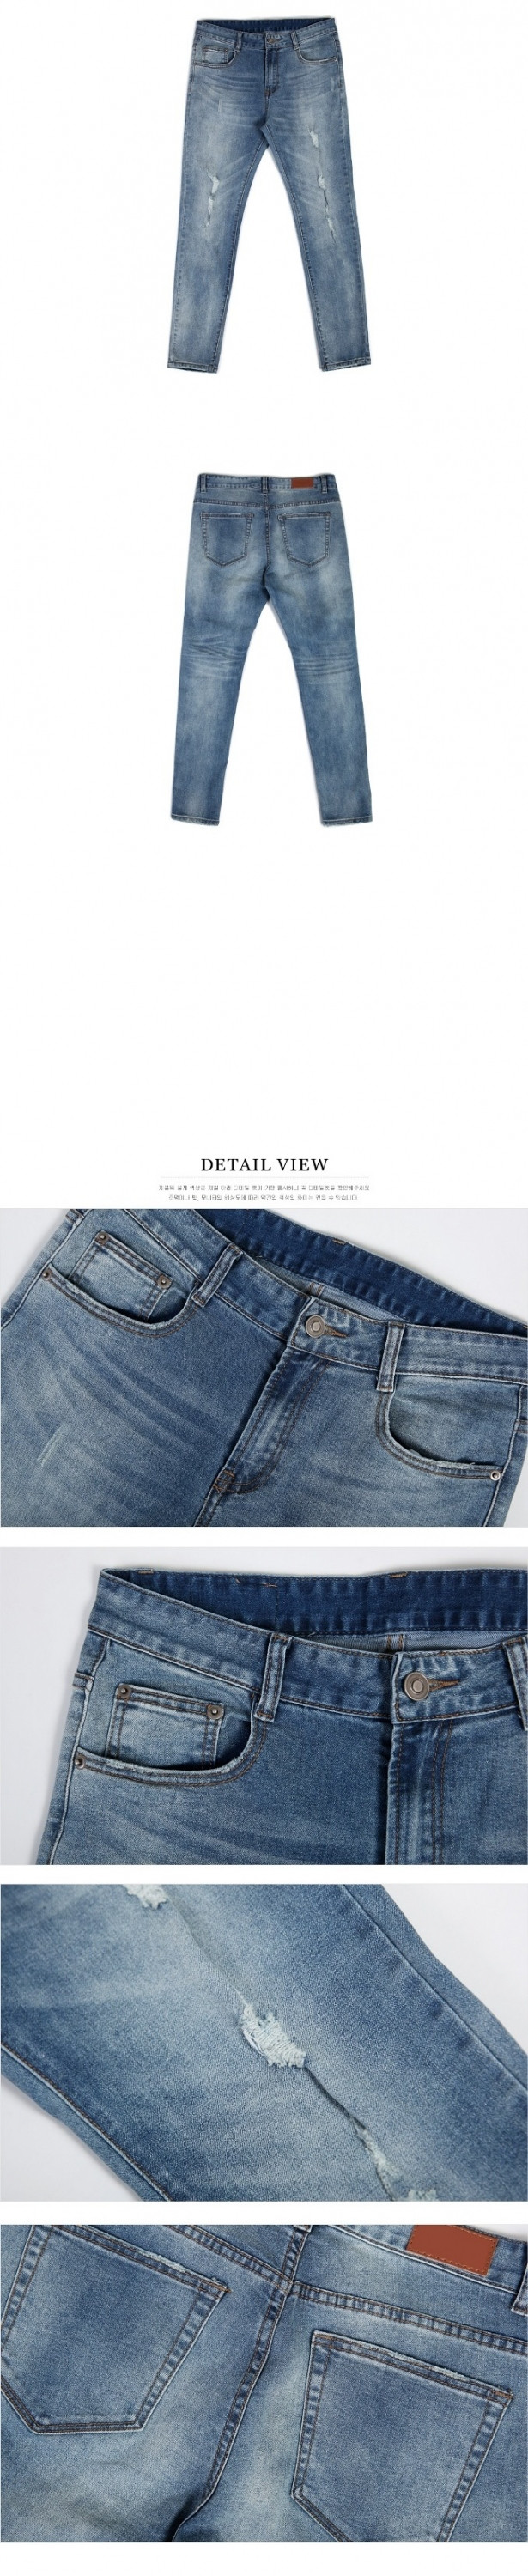 Quần jeans nhập khẩu Hàn Quốc có tại trời trang Korea